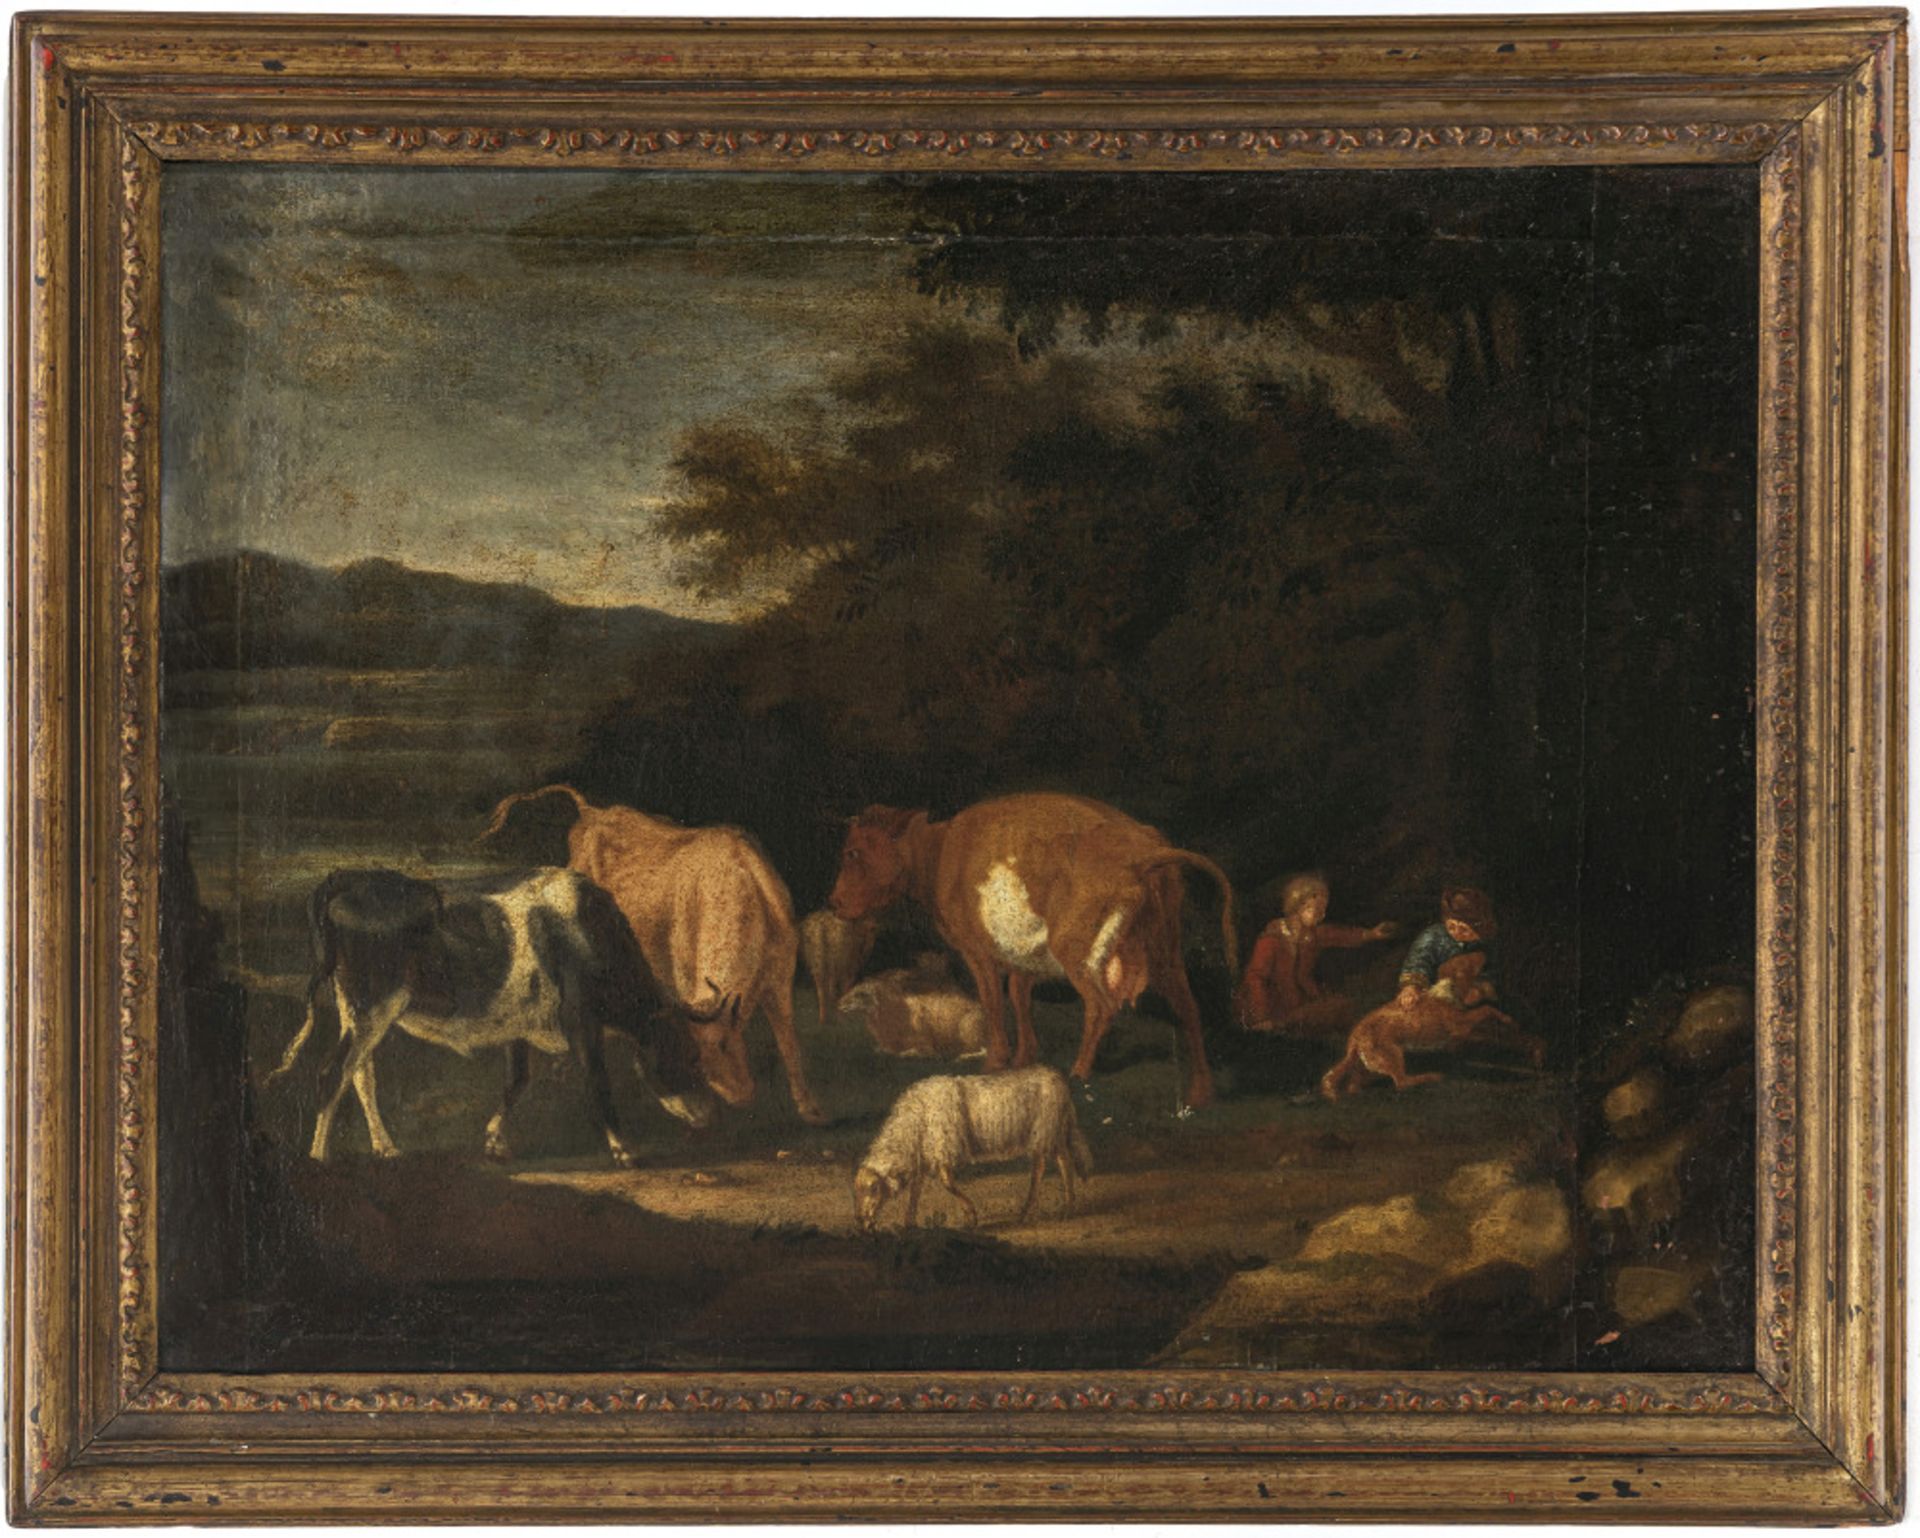 Unbekannt 17th/18th century - Herder children with cows